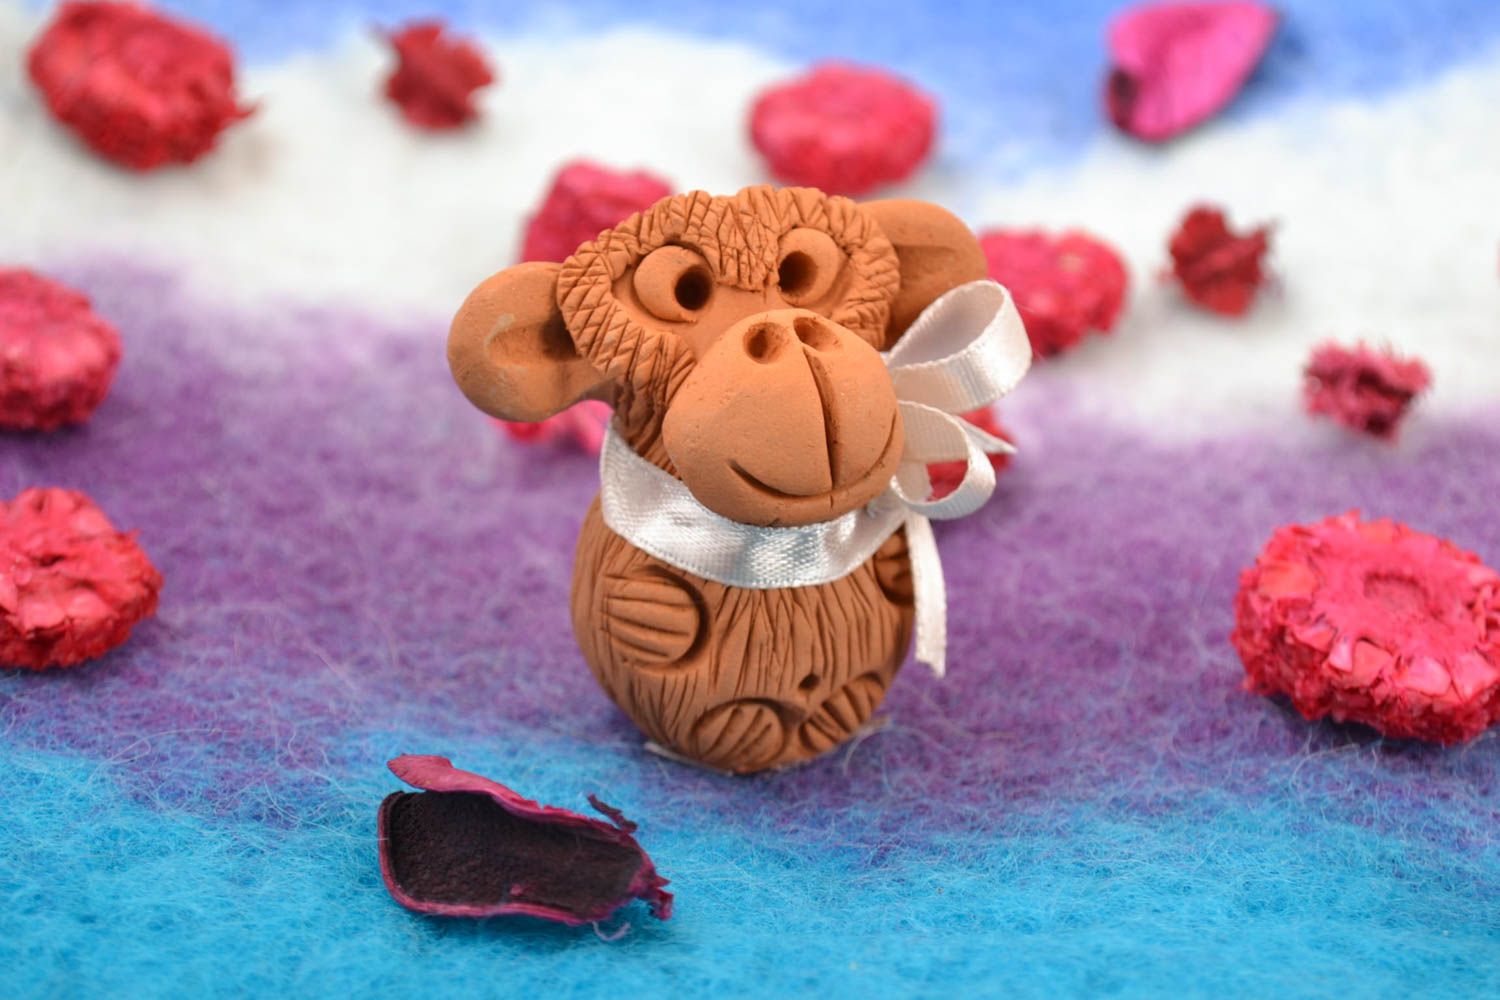 Фигурка из глины обезьянка с бантиком на шее маленькая коричневая ручной работы  фото 1